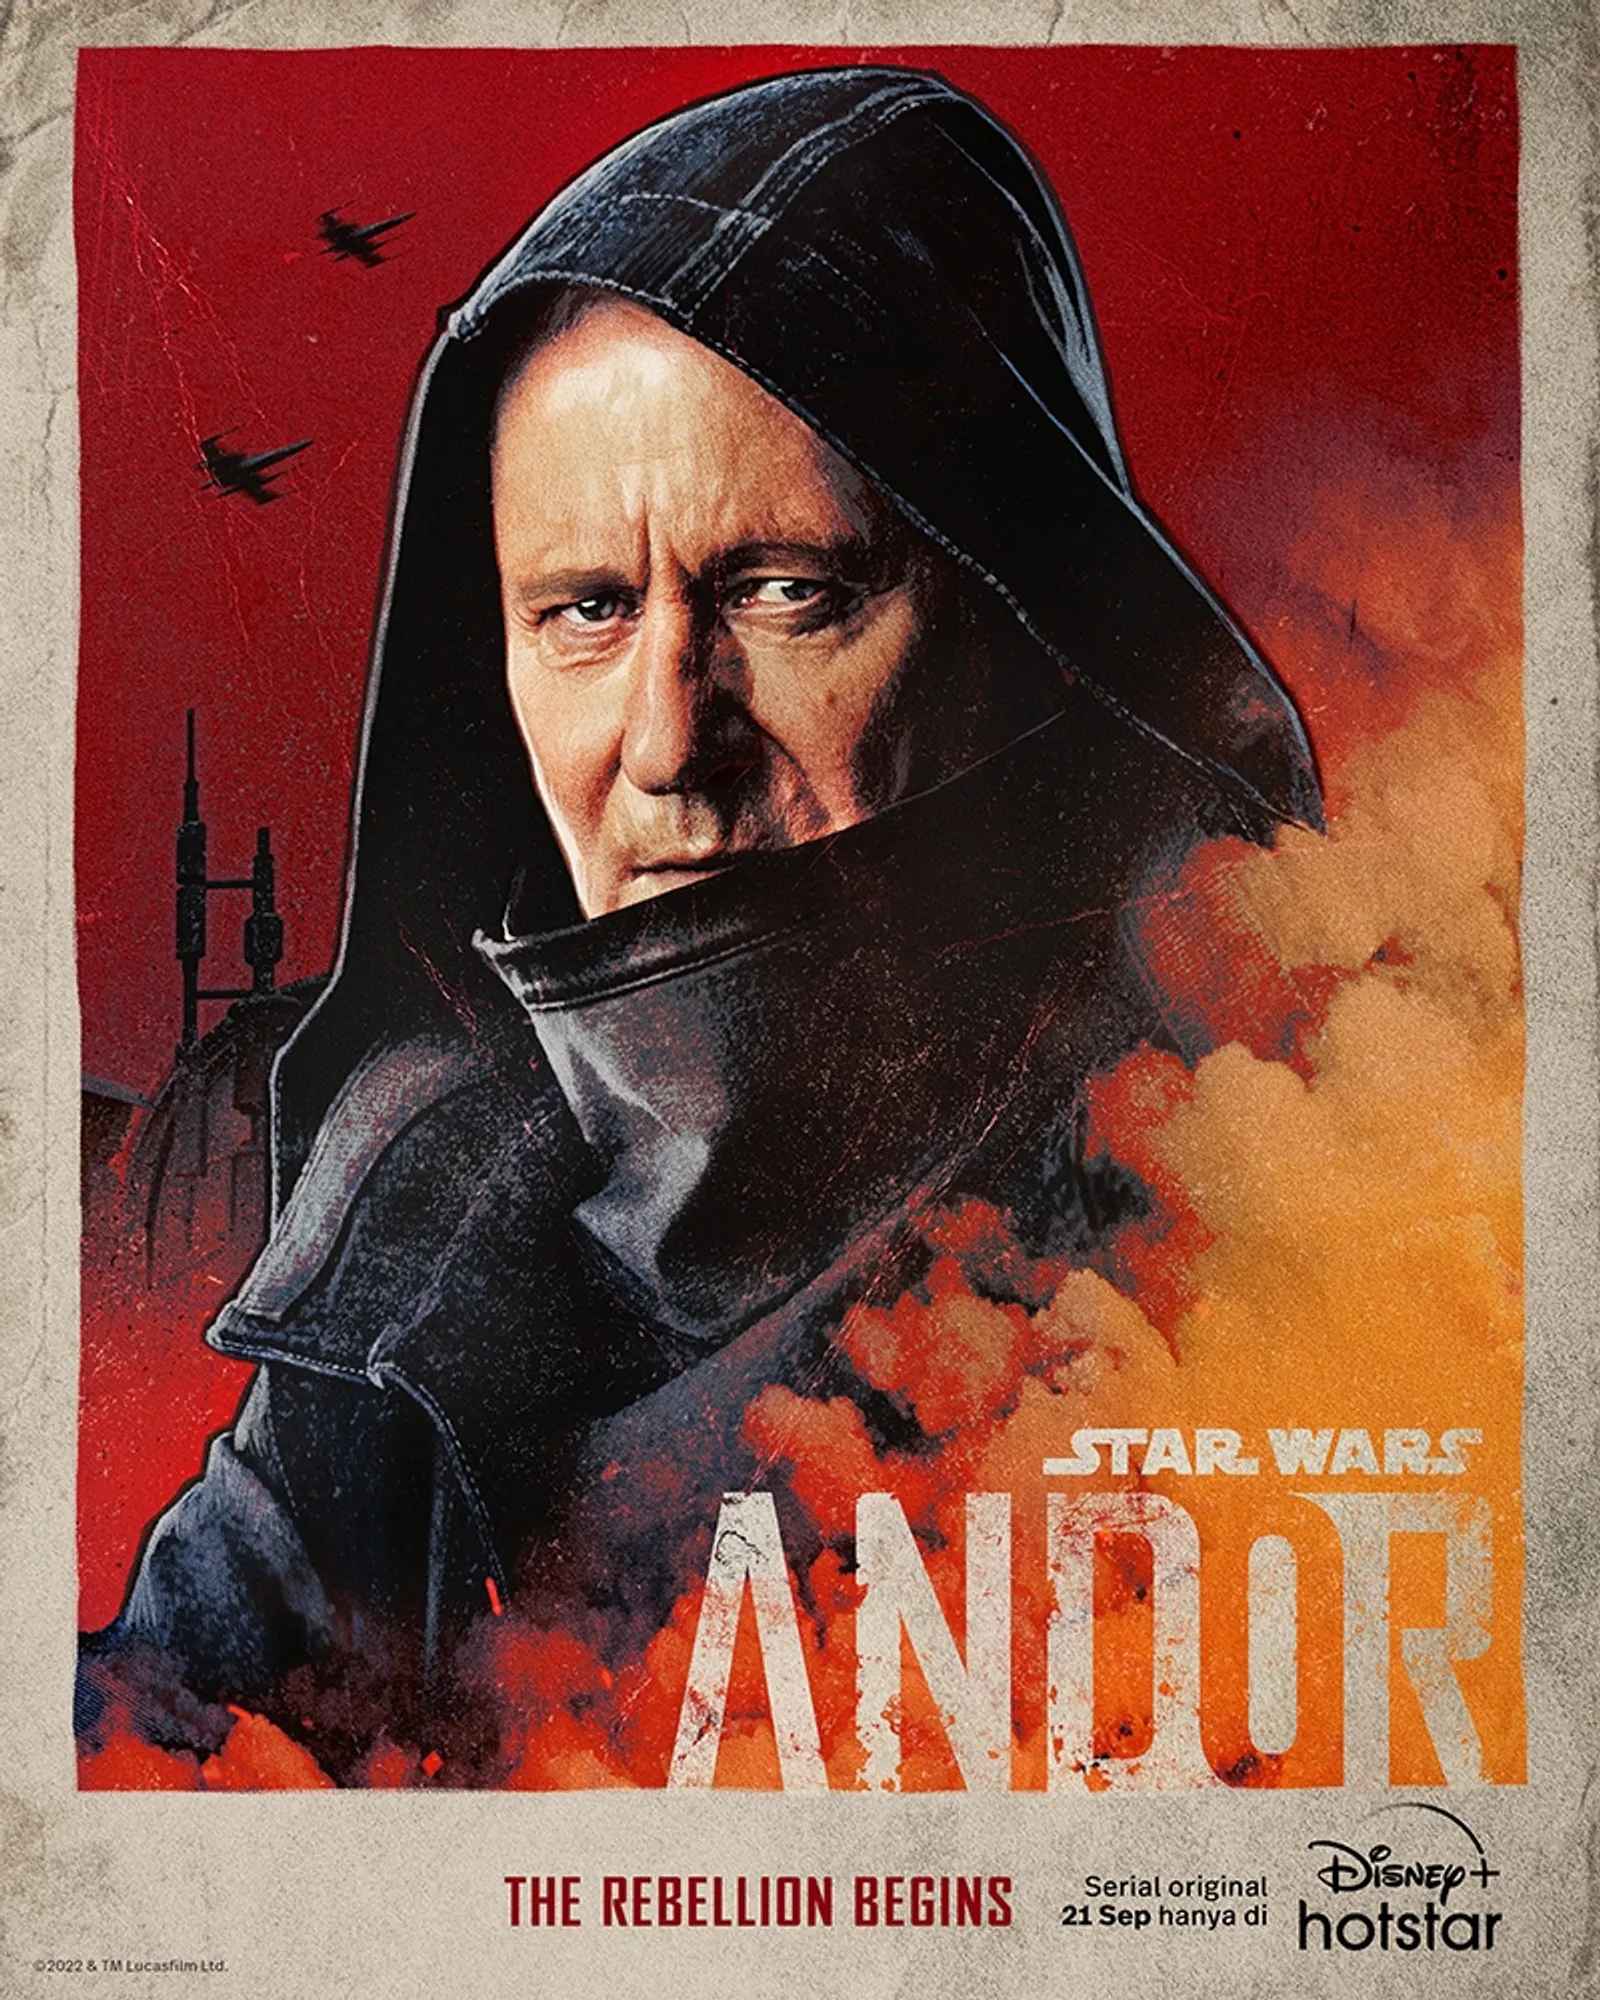 Kenalan Sama Karakter Serial Terbaru Disney+ Hotstar Star Wars "Andor"